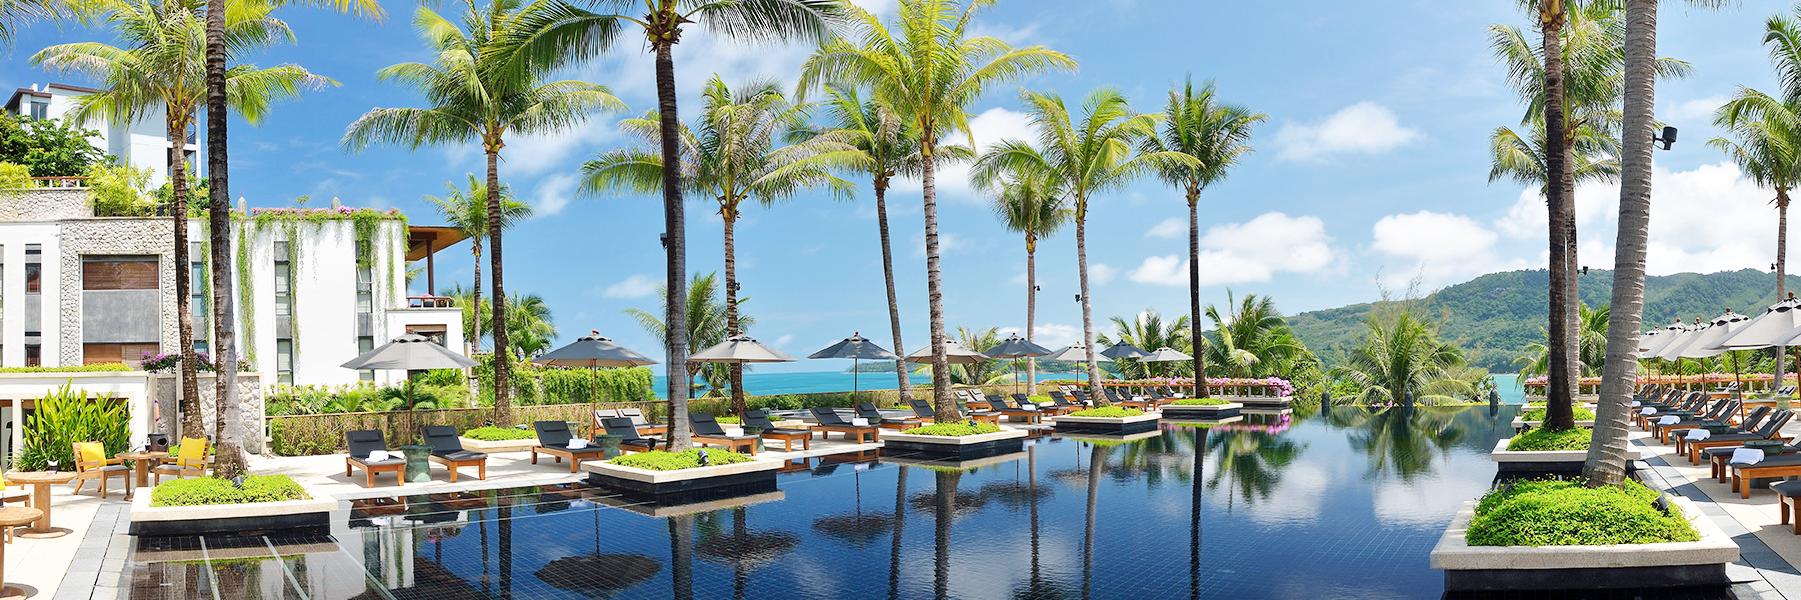 Andara Resort & Villas, in Phuket, Thailand - Preferred Hotels & Resorts